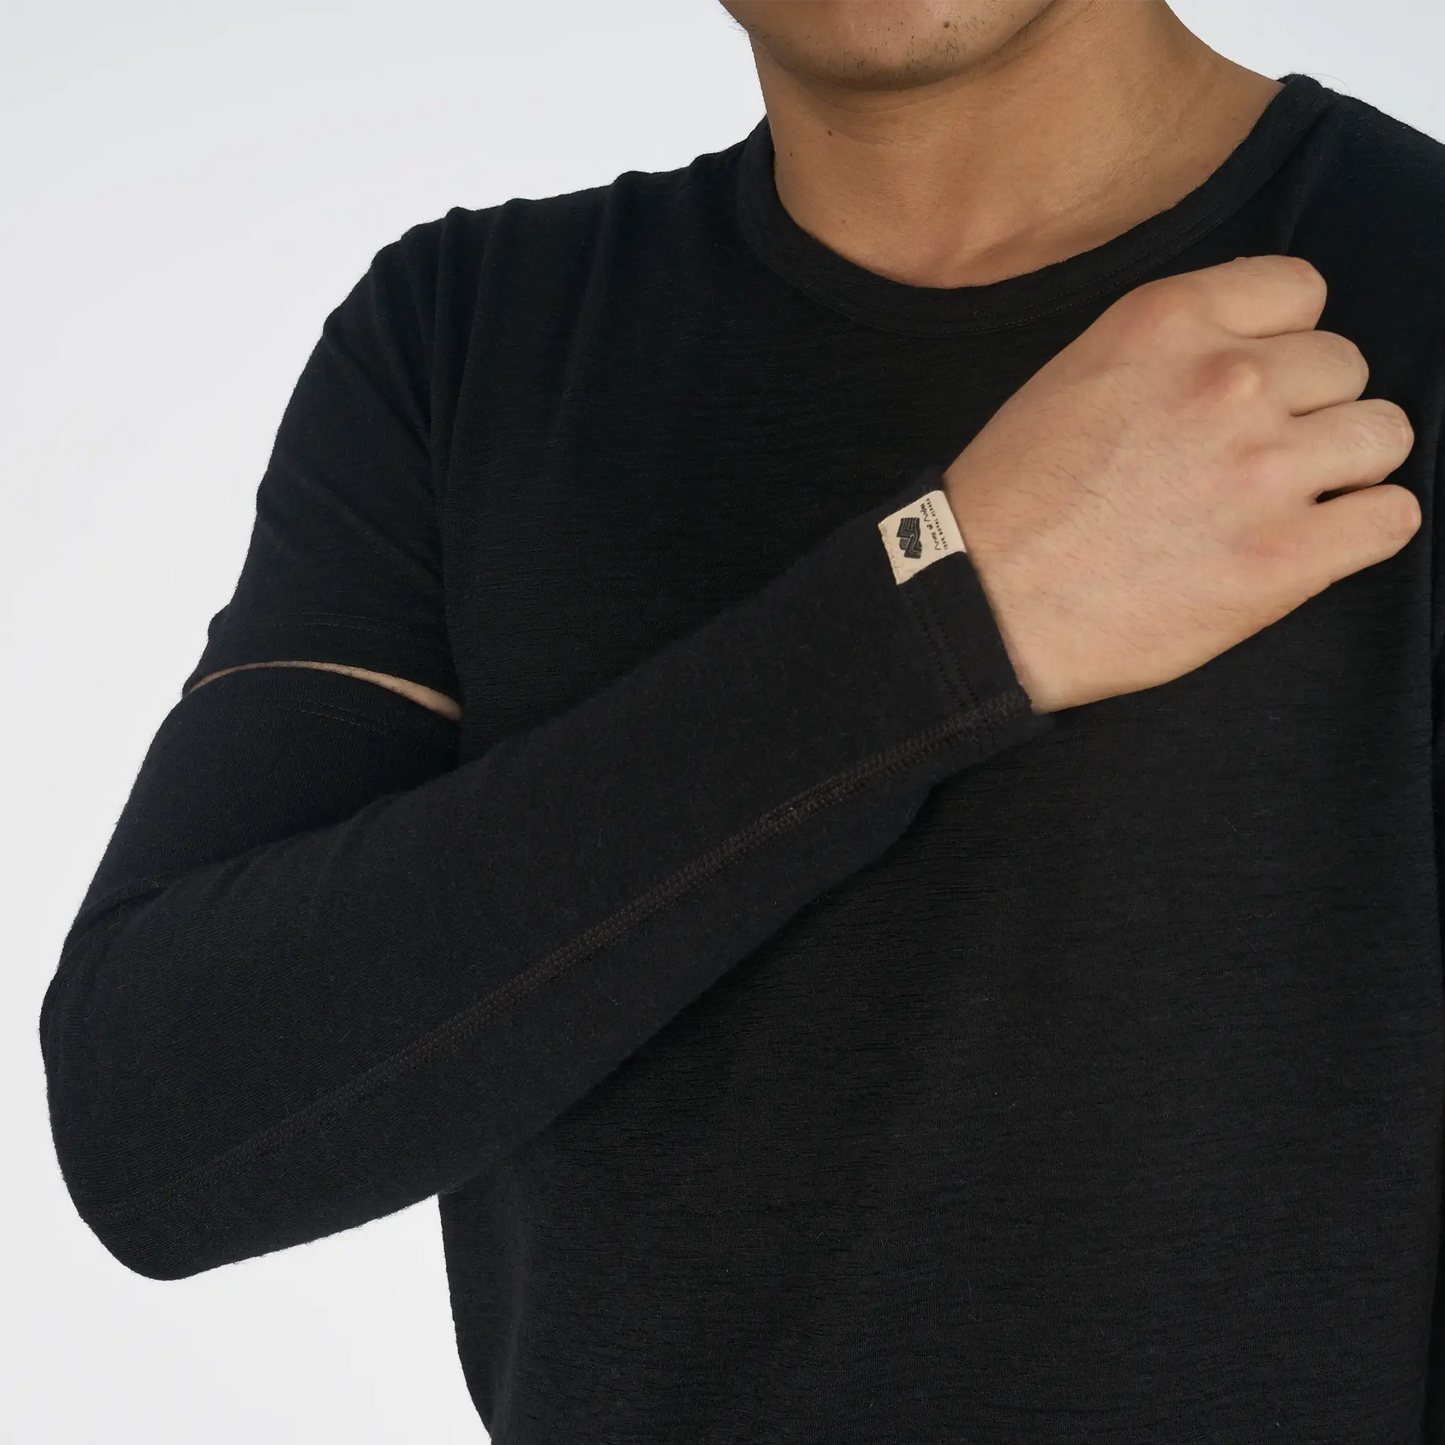 mens warmest sleeve lightweight color black